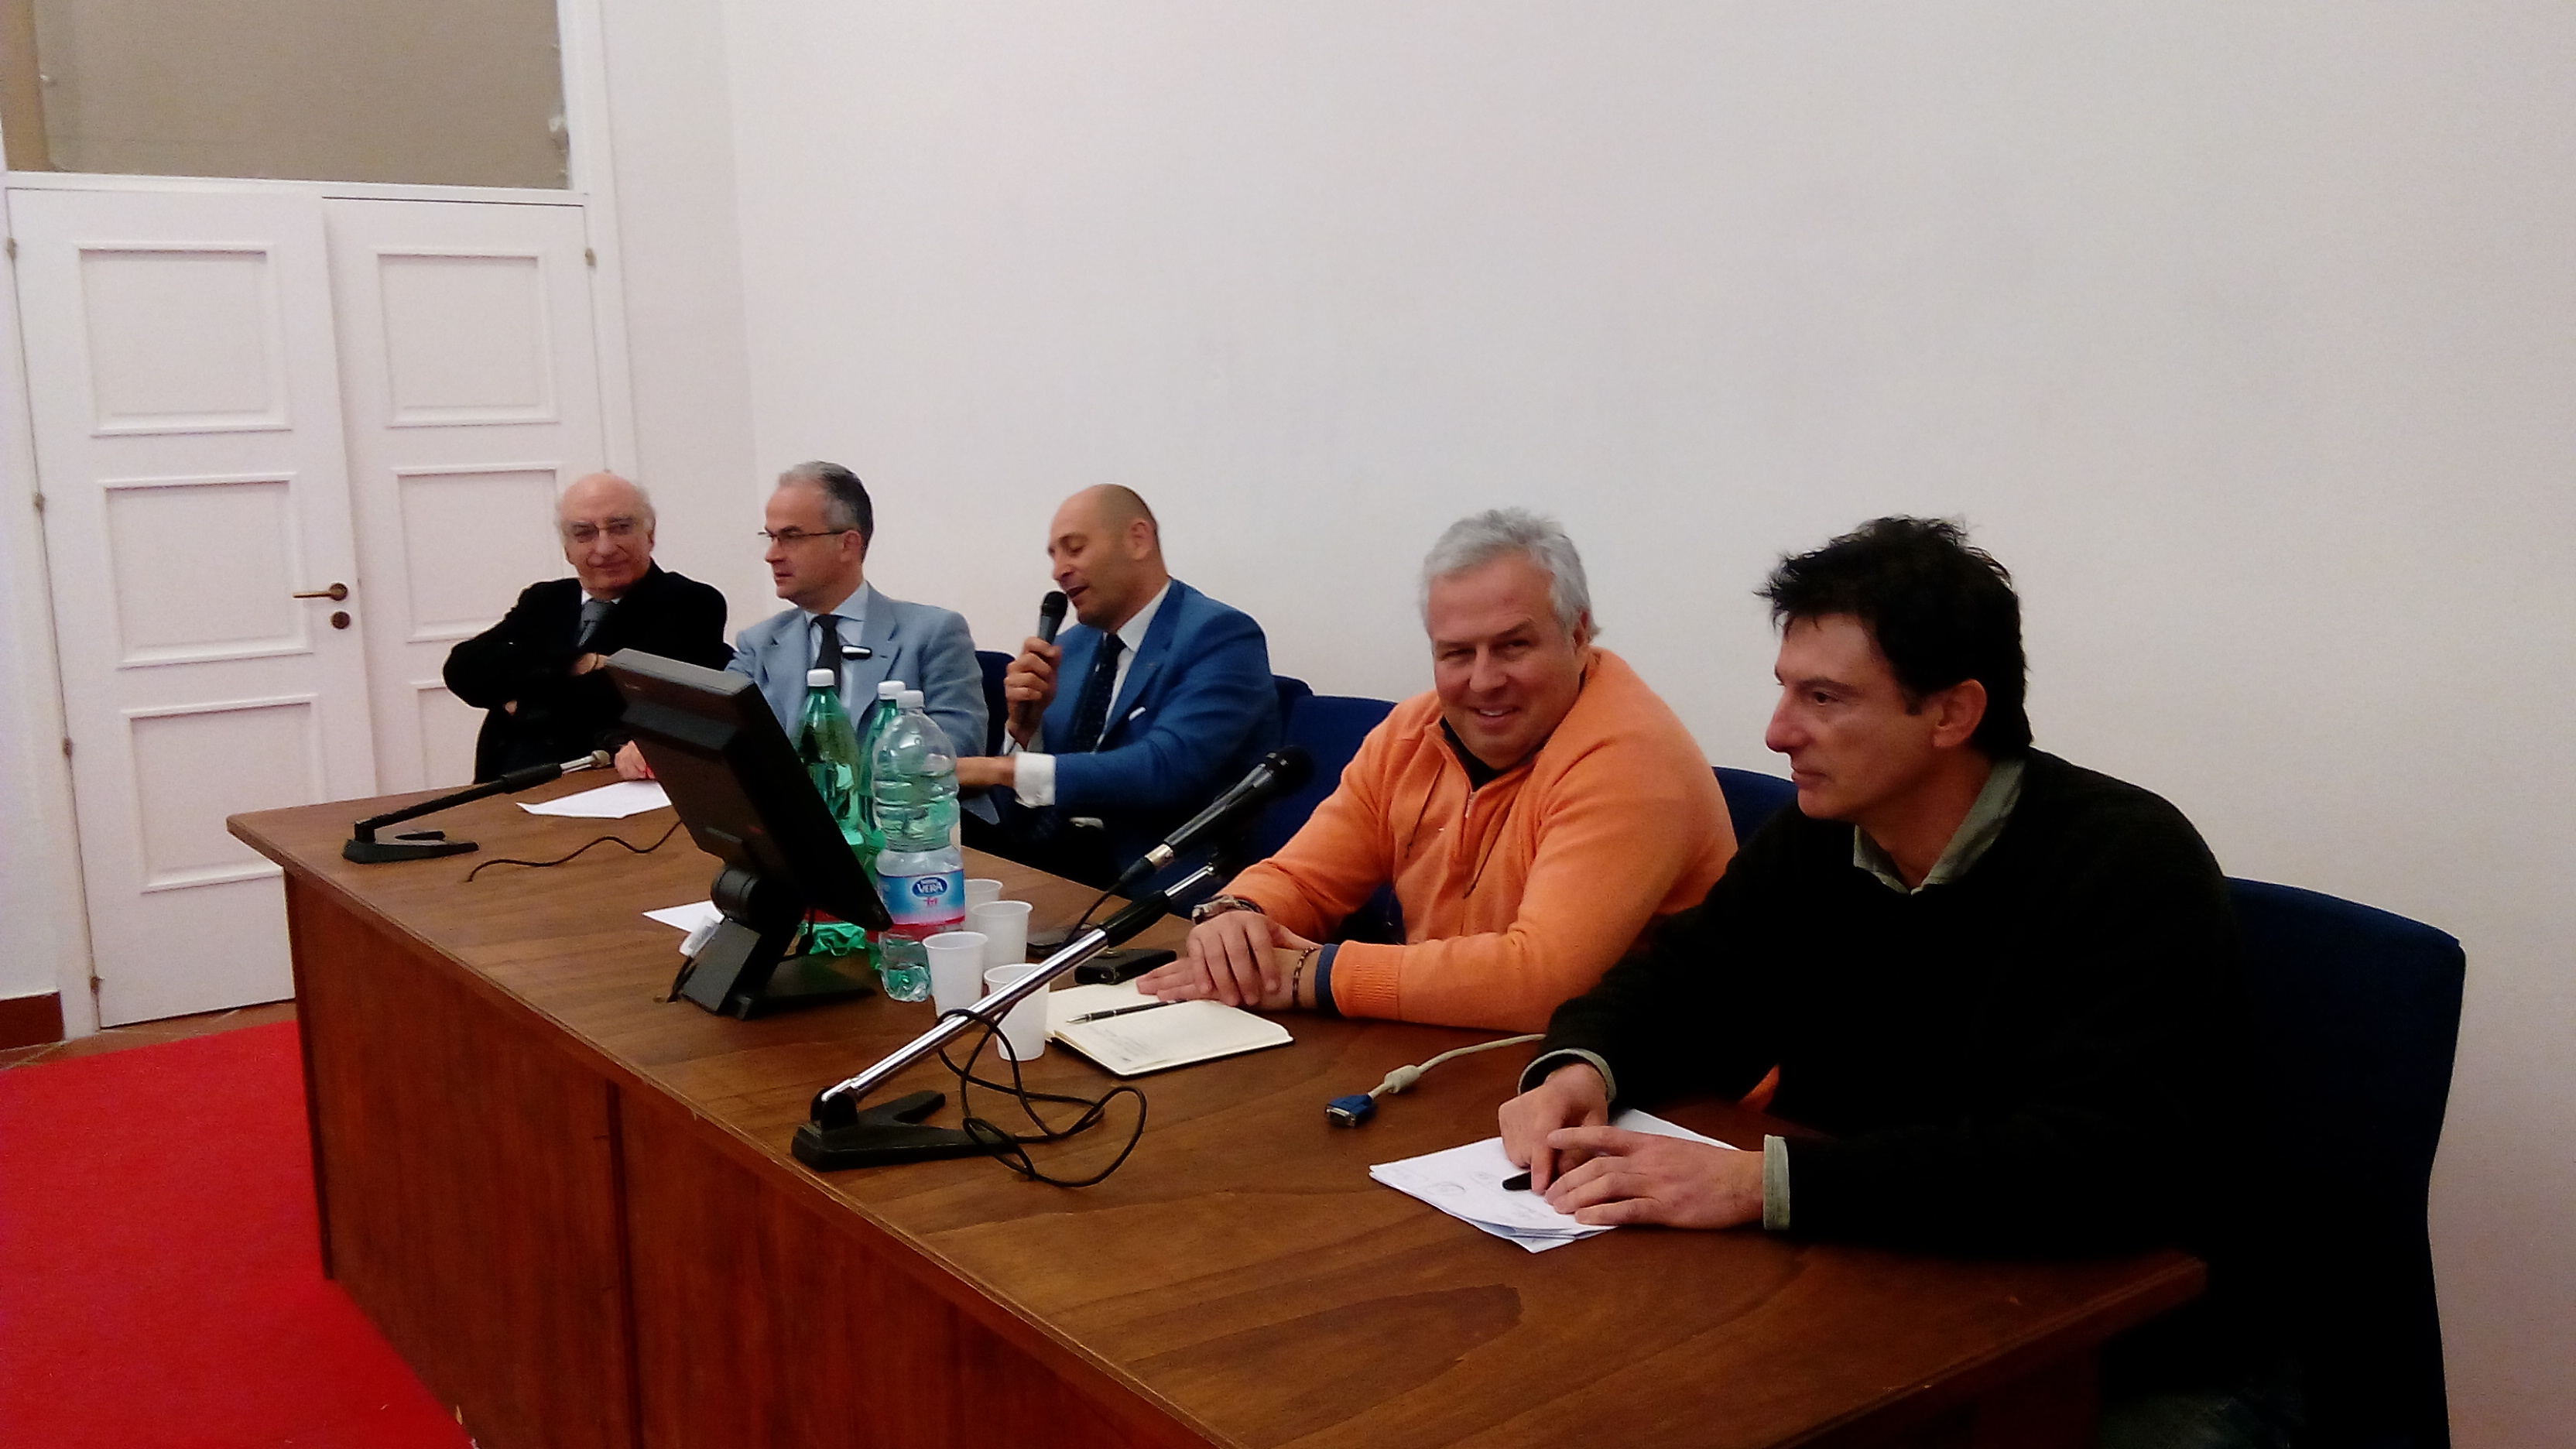 Michele De Simone, Pio Del Gaudio, Davide Tizzano, Gianfranco Coppola, Ottavio Lucarelli